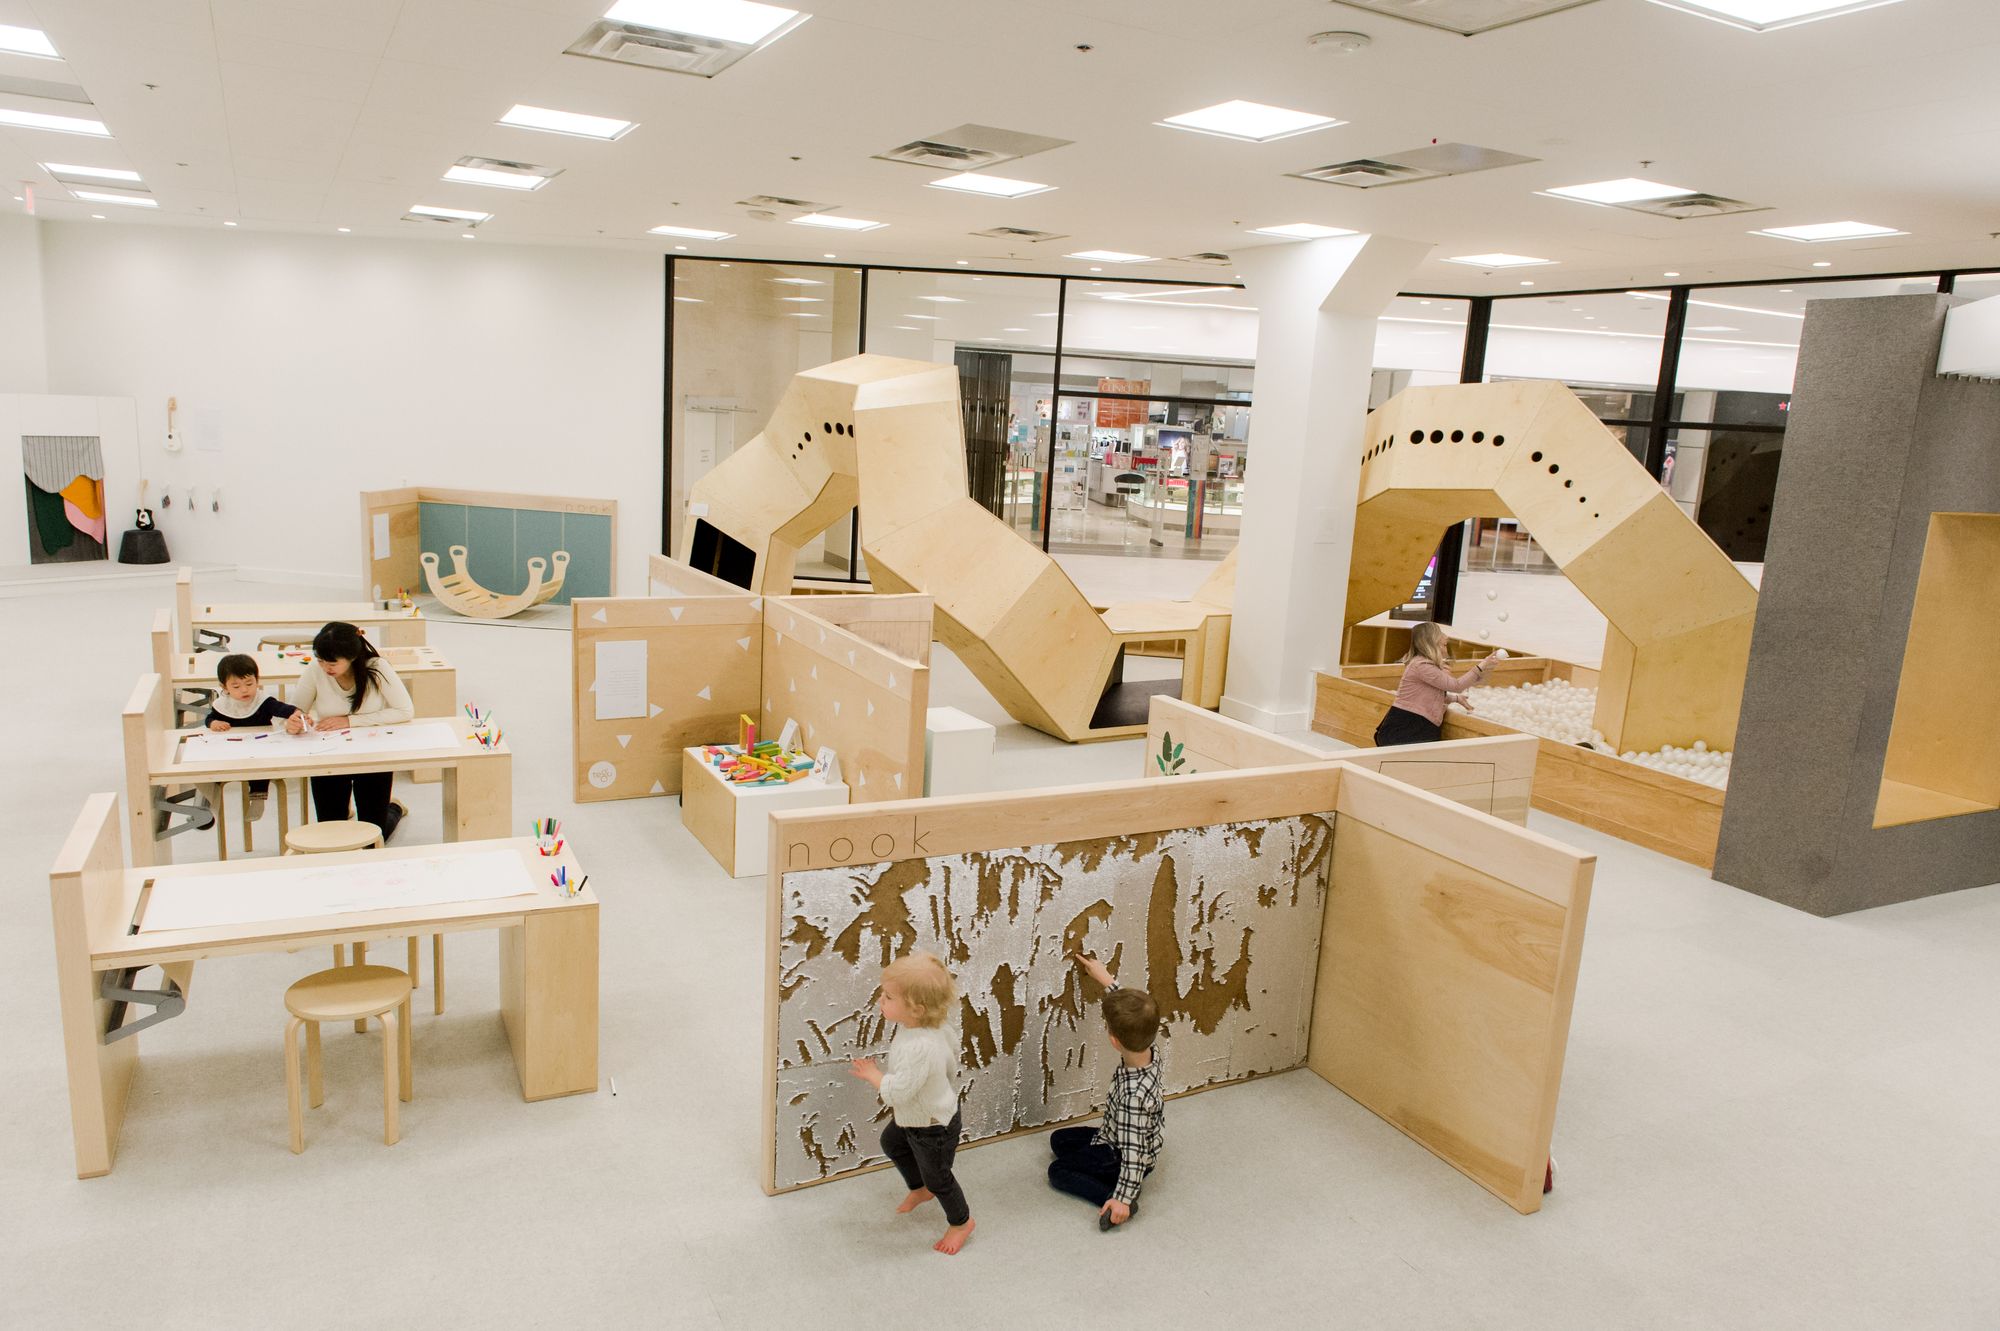 图片[2]|Nook游戏和学习空间-Ballston Quarter|ART-Arrakis | 建筑室内设计的创新与灵感